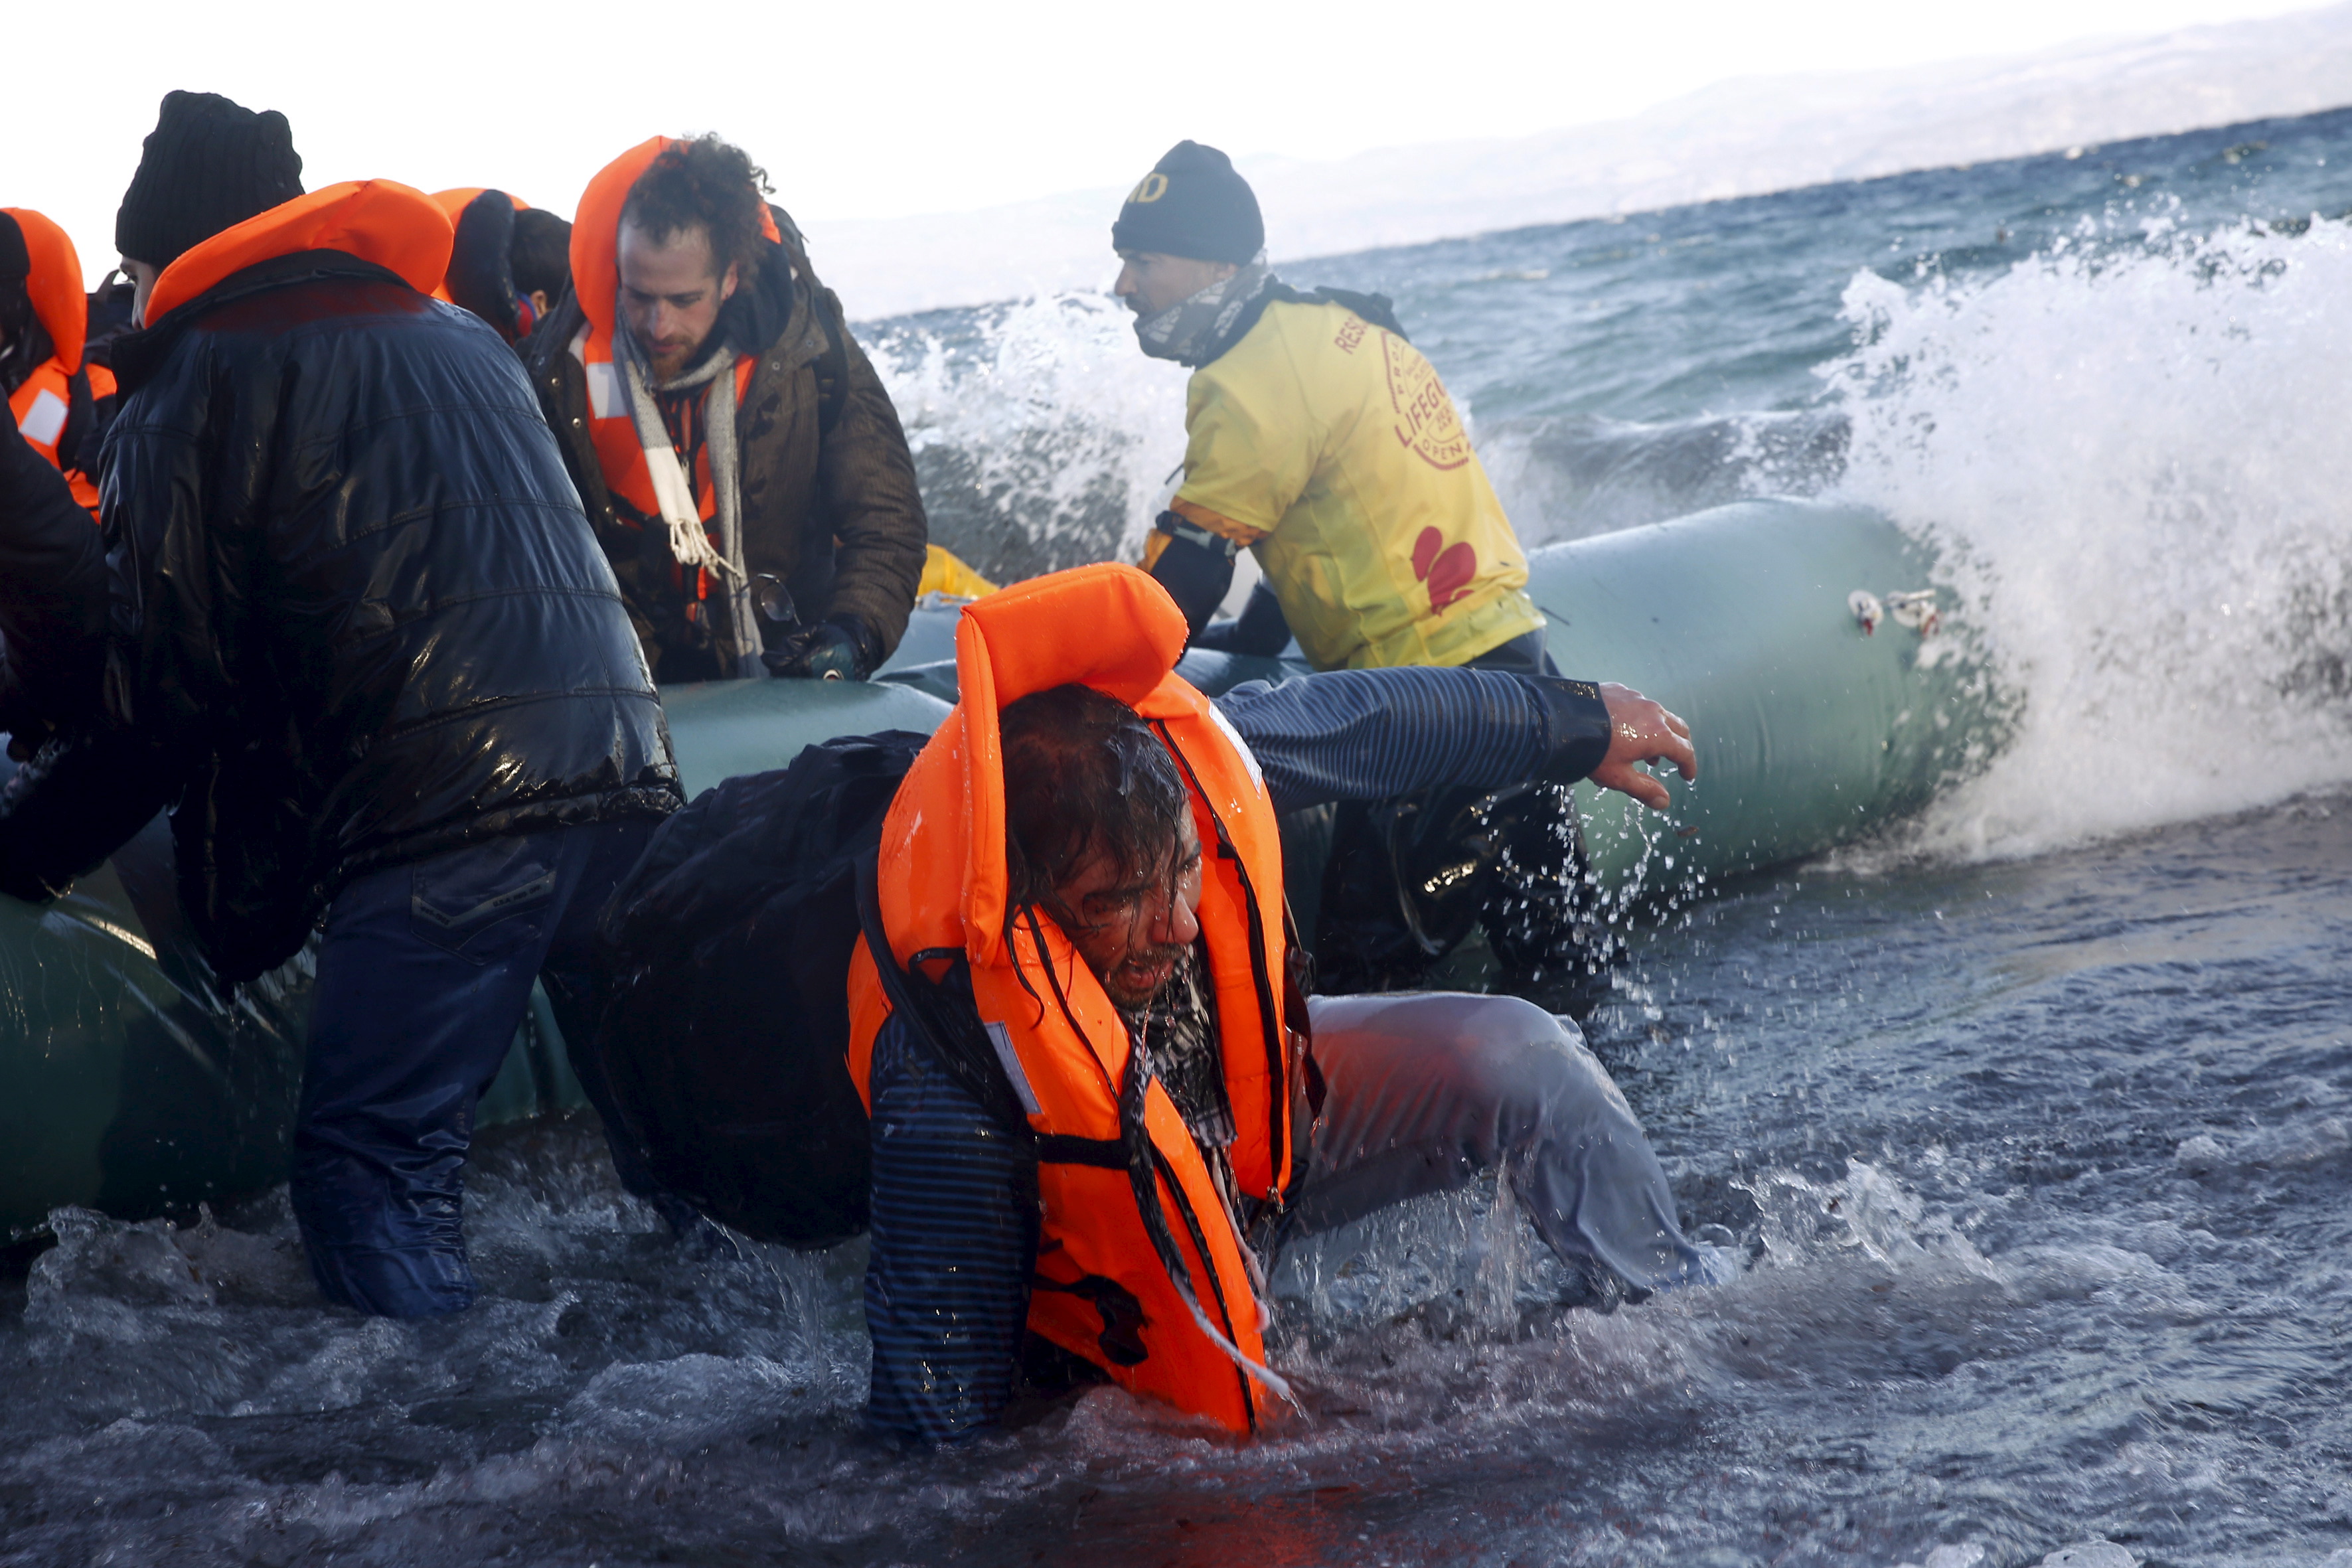 Una lancha de refugiados llega a Lesbos. Reuters